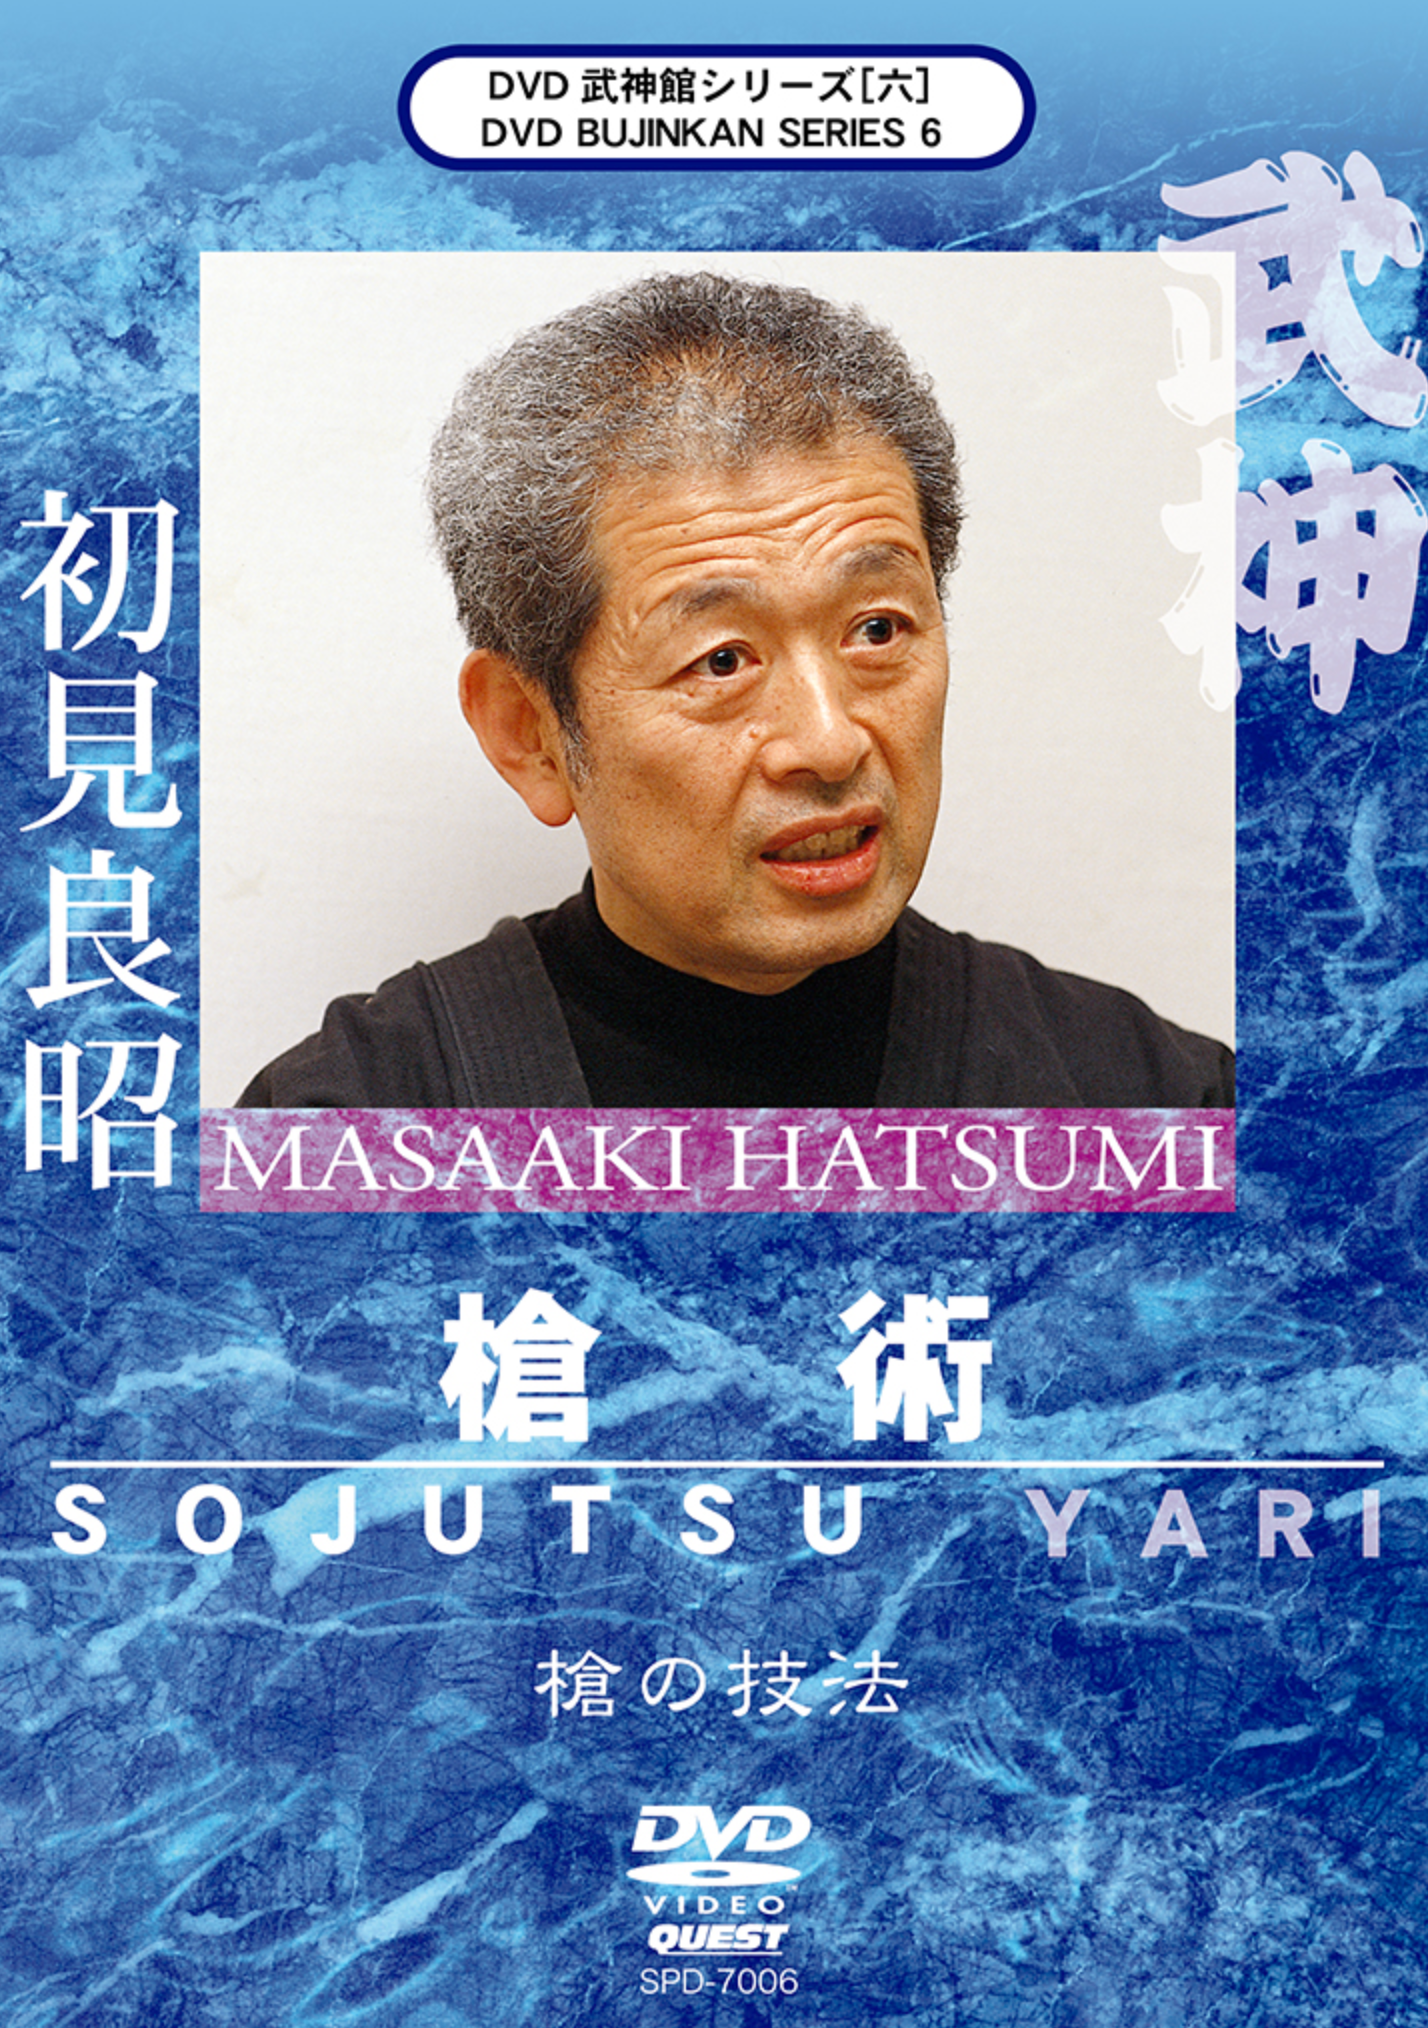 Bujinkan DVD Series 6: Sojutsu & Yari with Masaaki Hatsumi - Budovideos Inc